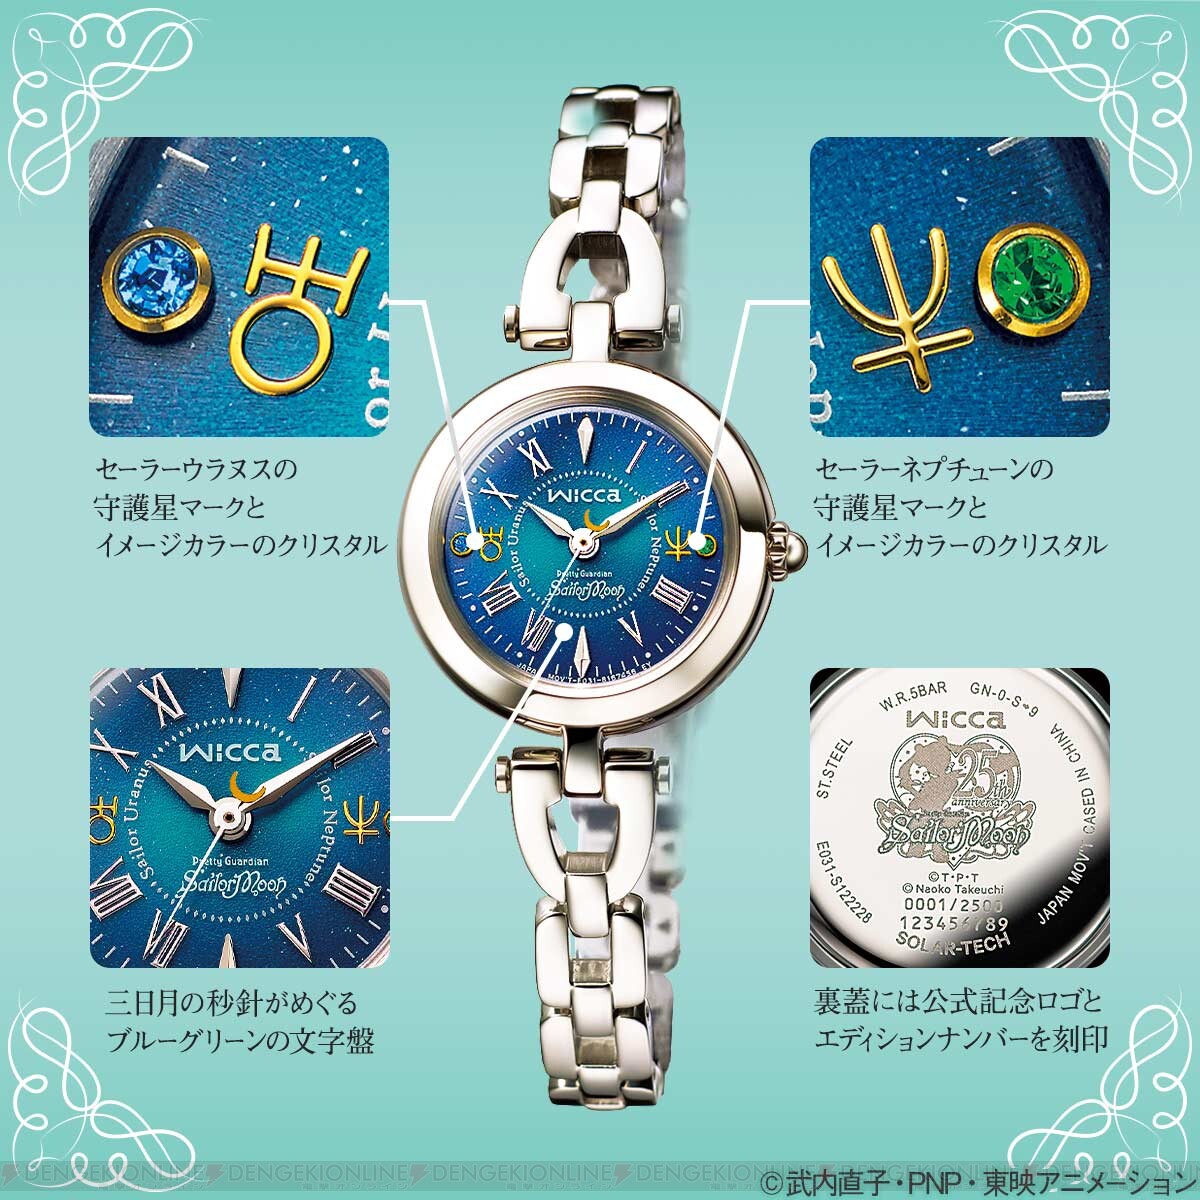 美少女戦士セーラームーン よりウラヌス ネプチューンをイメージしたコラボ腕時計が販売開始 ガルスタオンライン